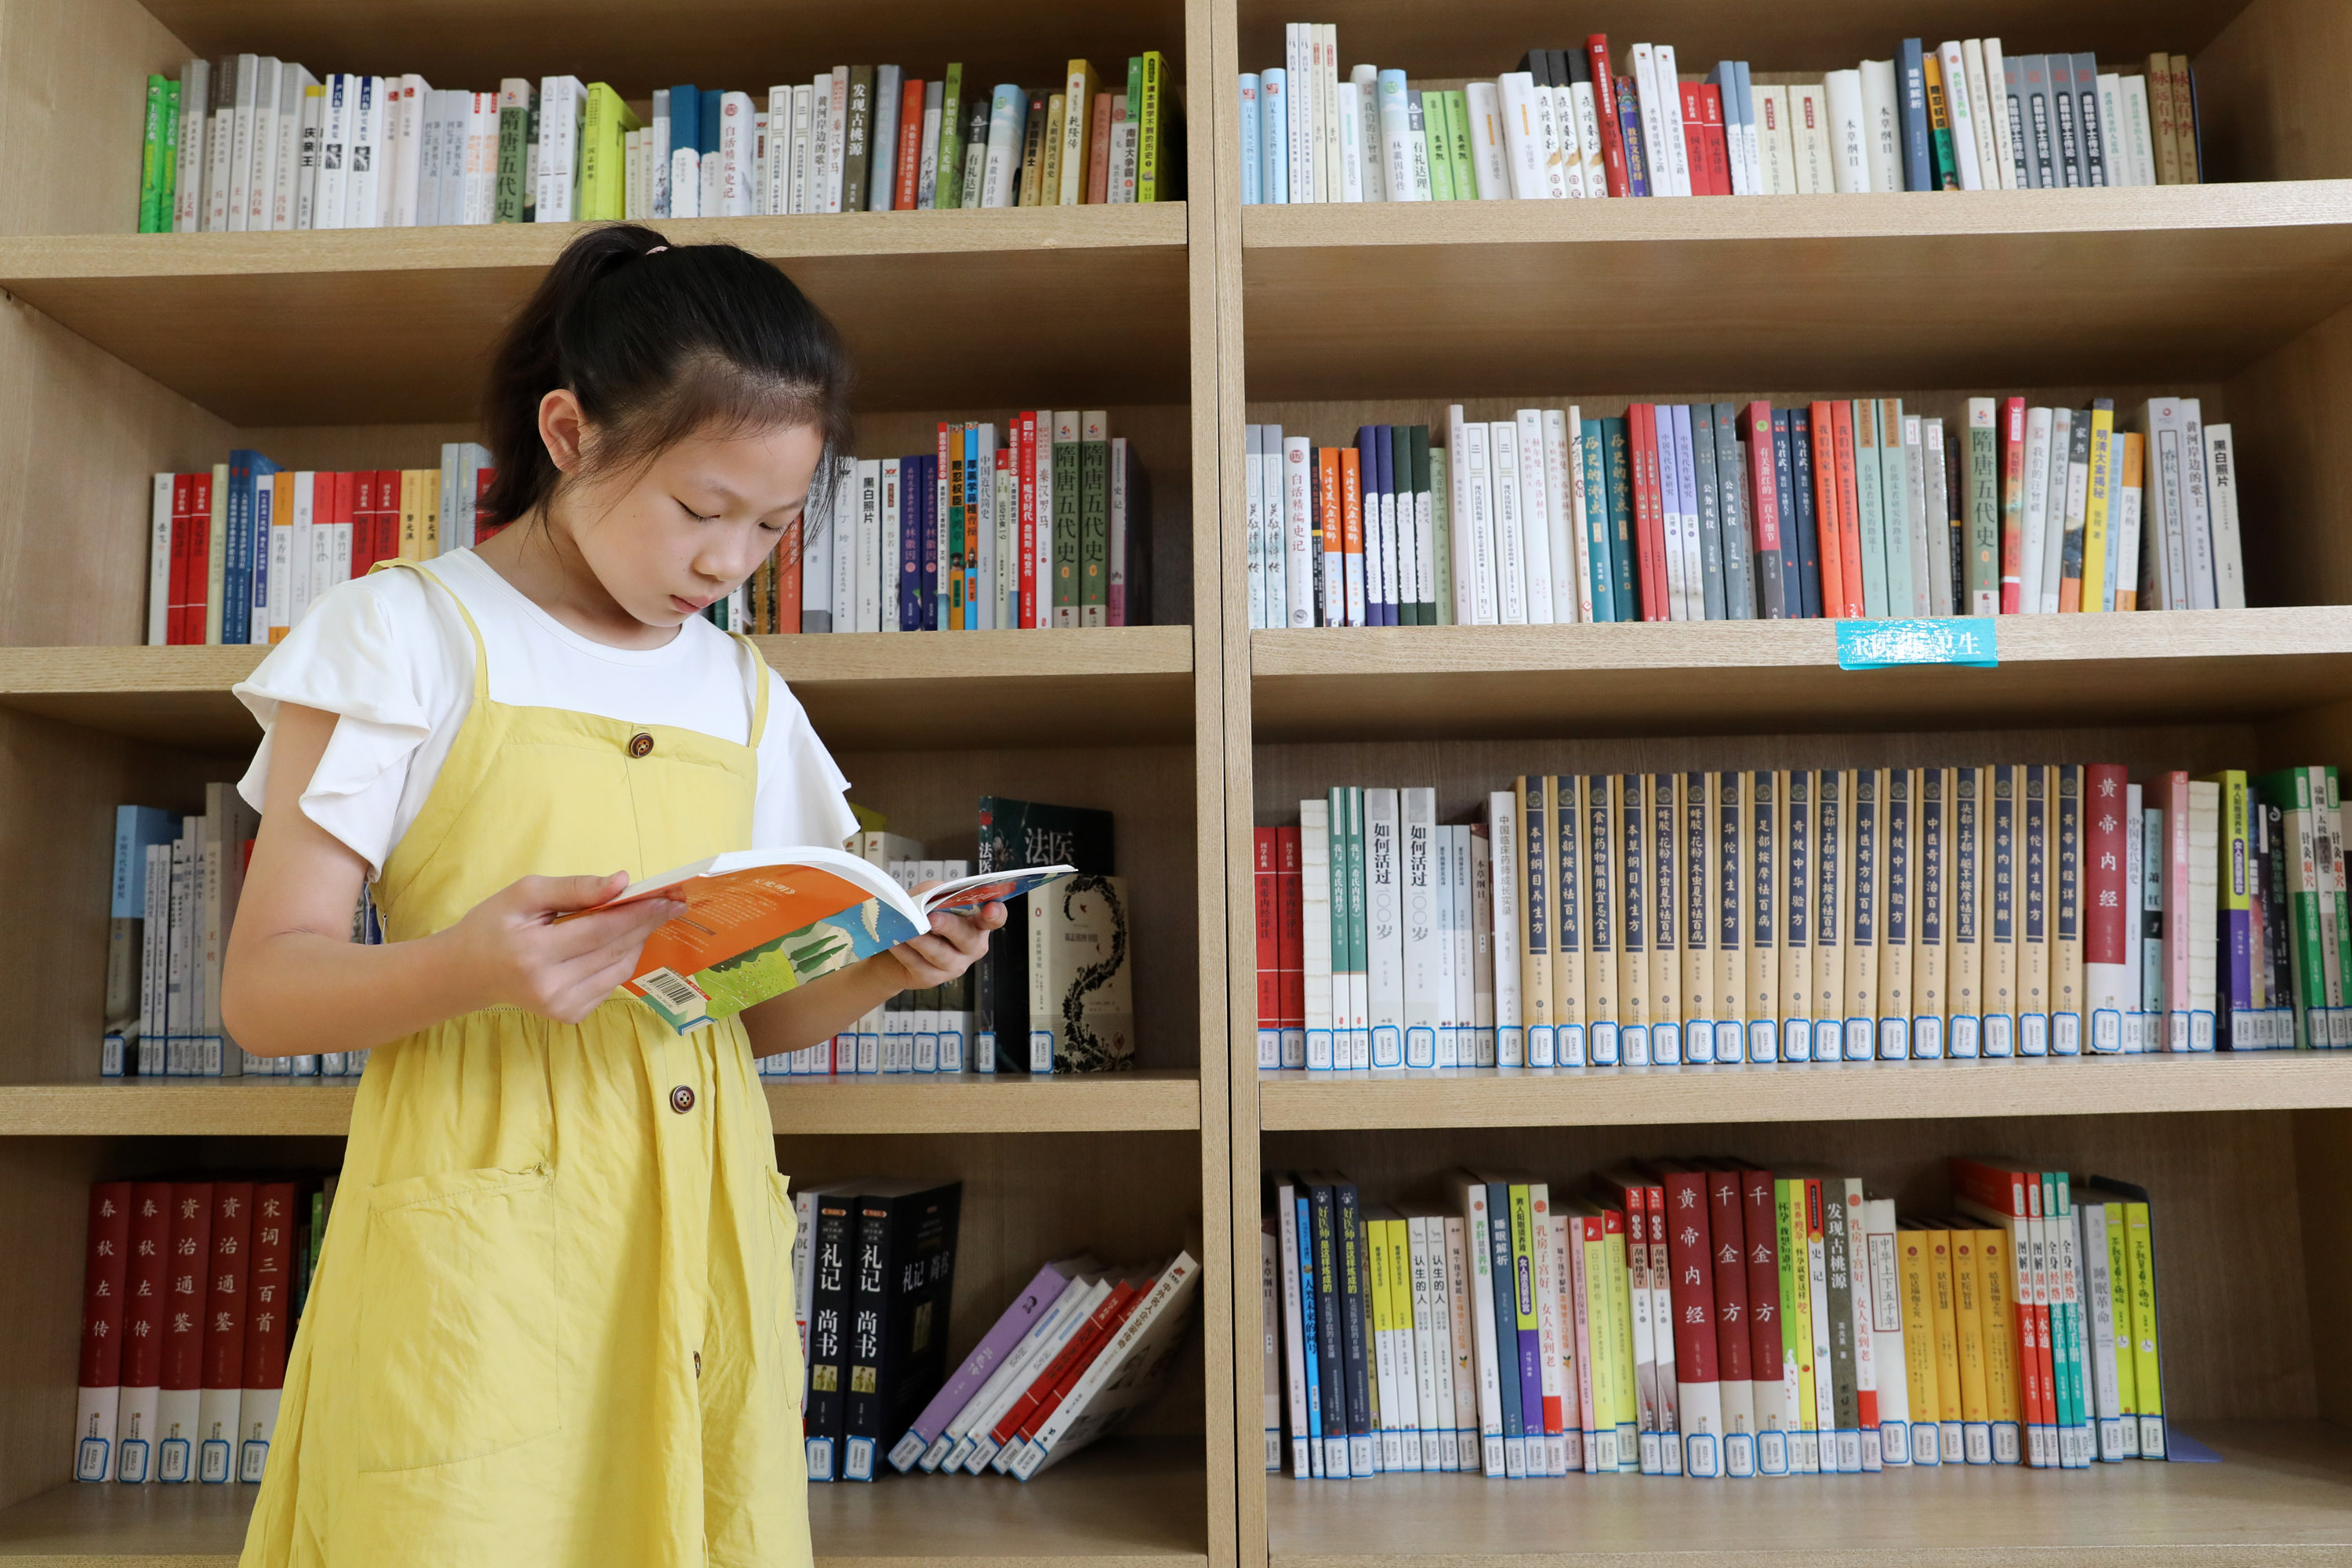 7月27日,一名小学生在河南省焦作市温县子夏书屋读书学习